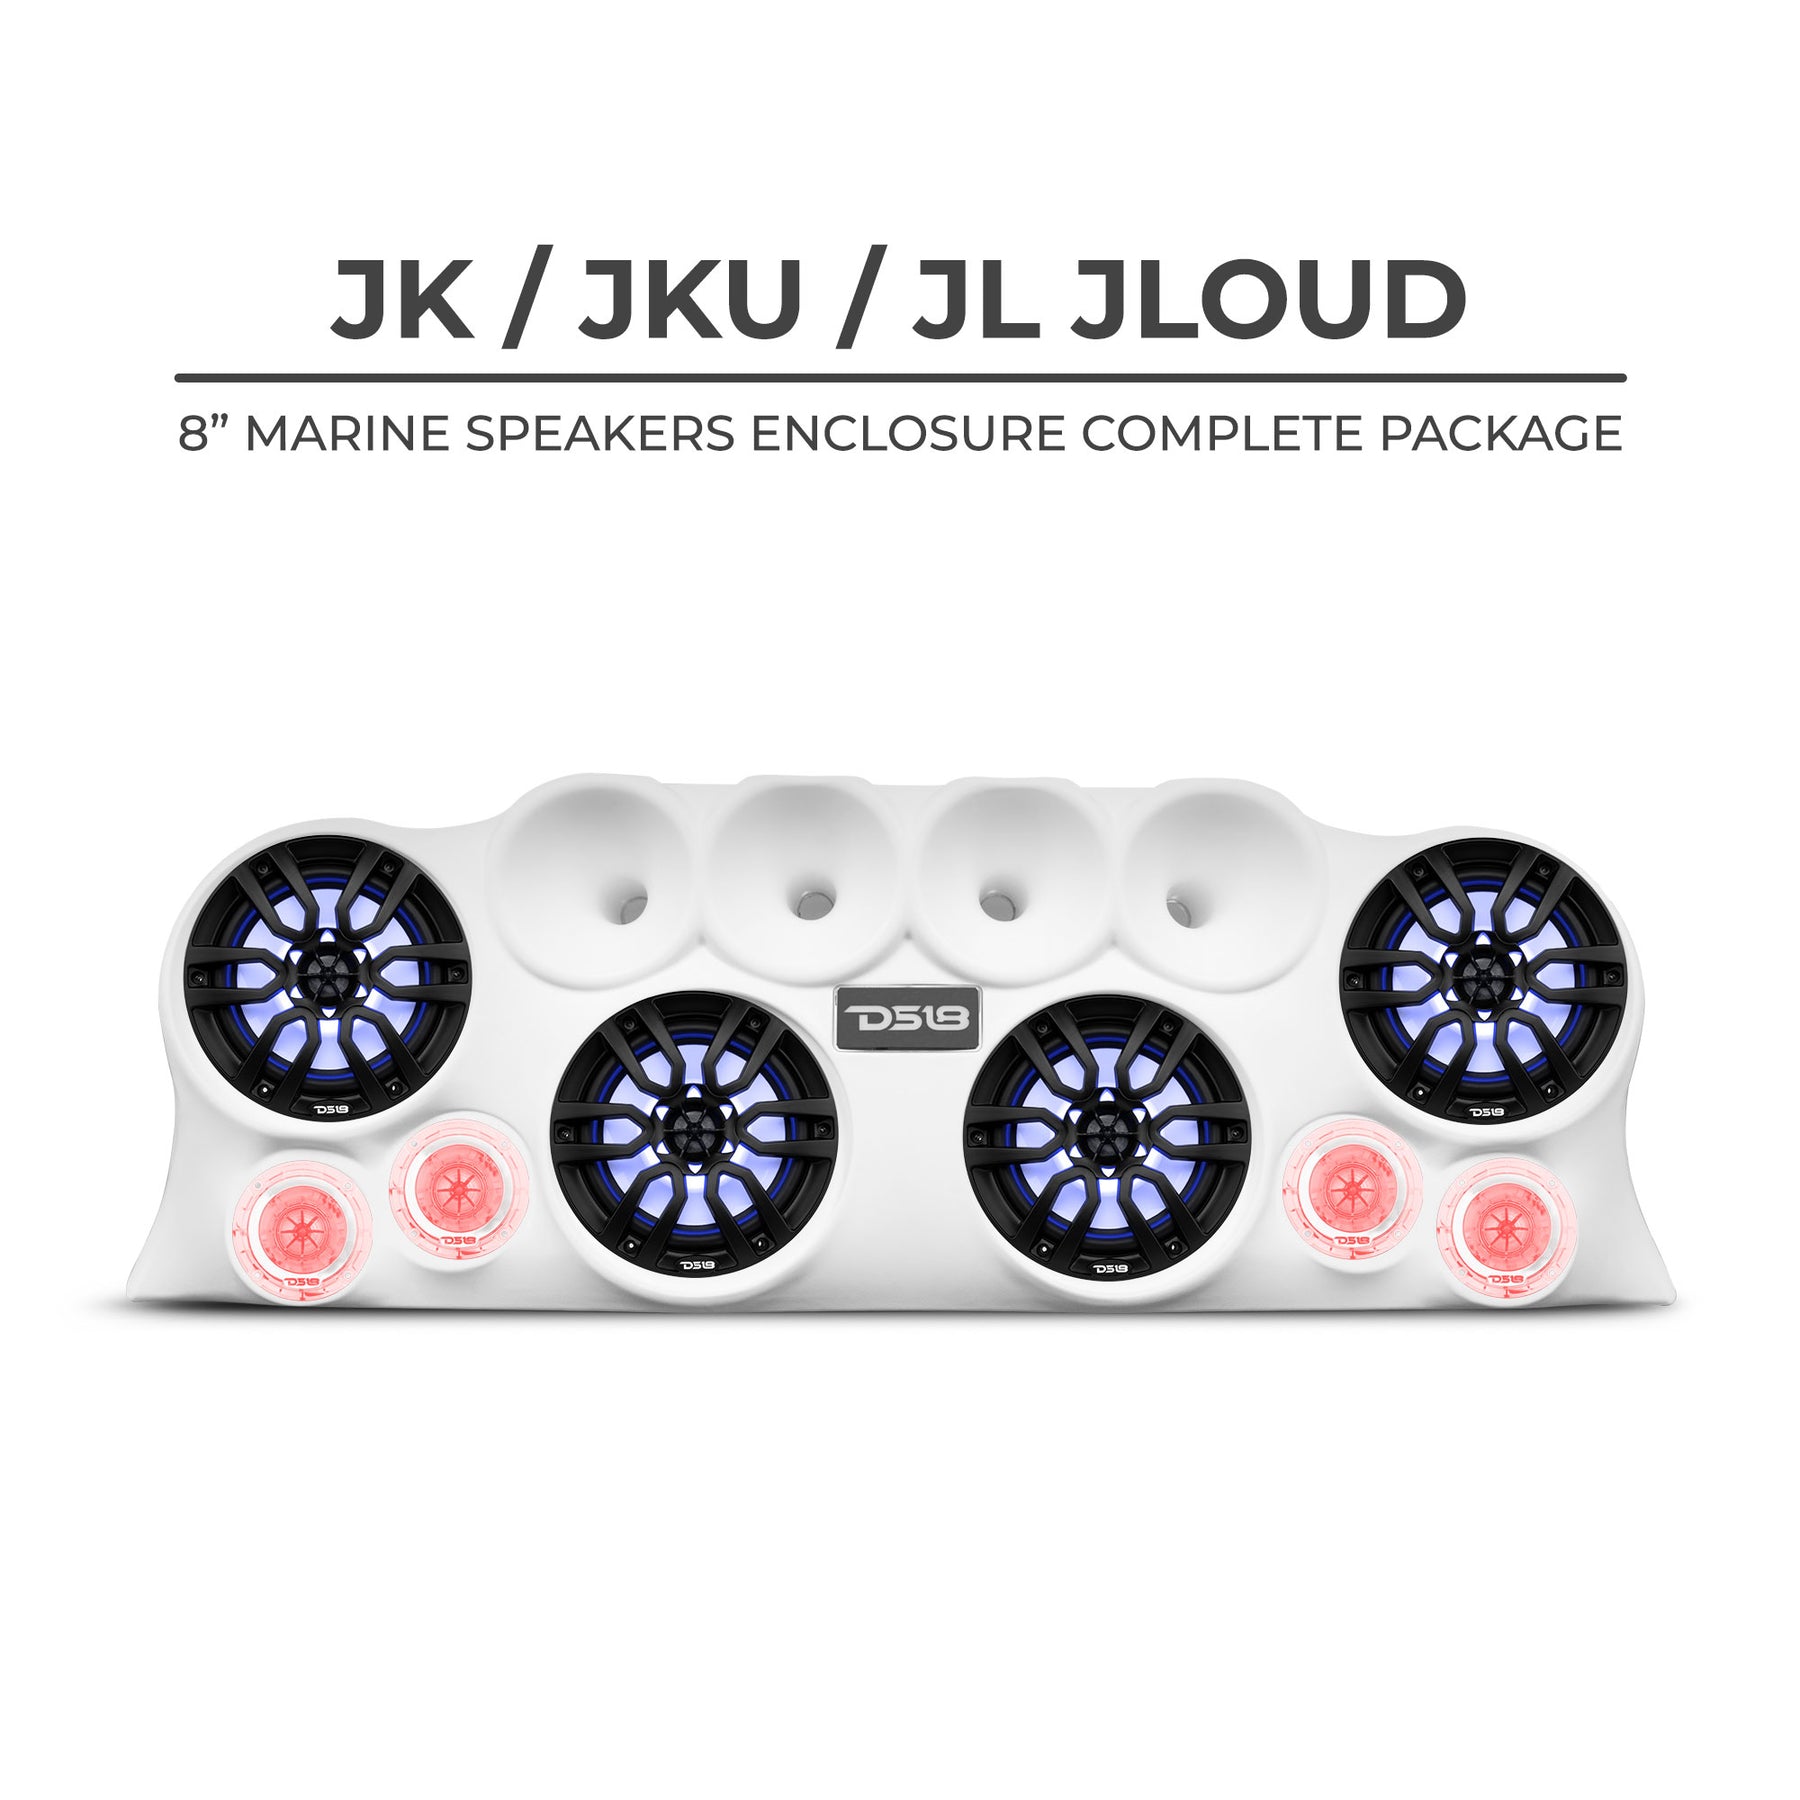 DS18 Loaded/JLOUD Jeep Wrangler JK/JKU/JL Loaded Sound Bar System best sound  audio system for Jeep Wrangler